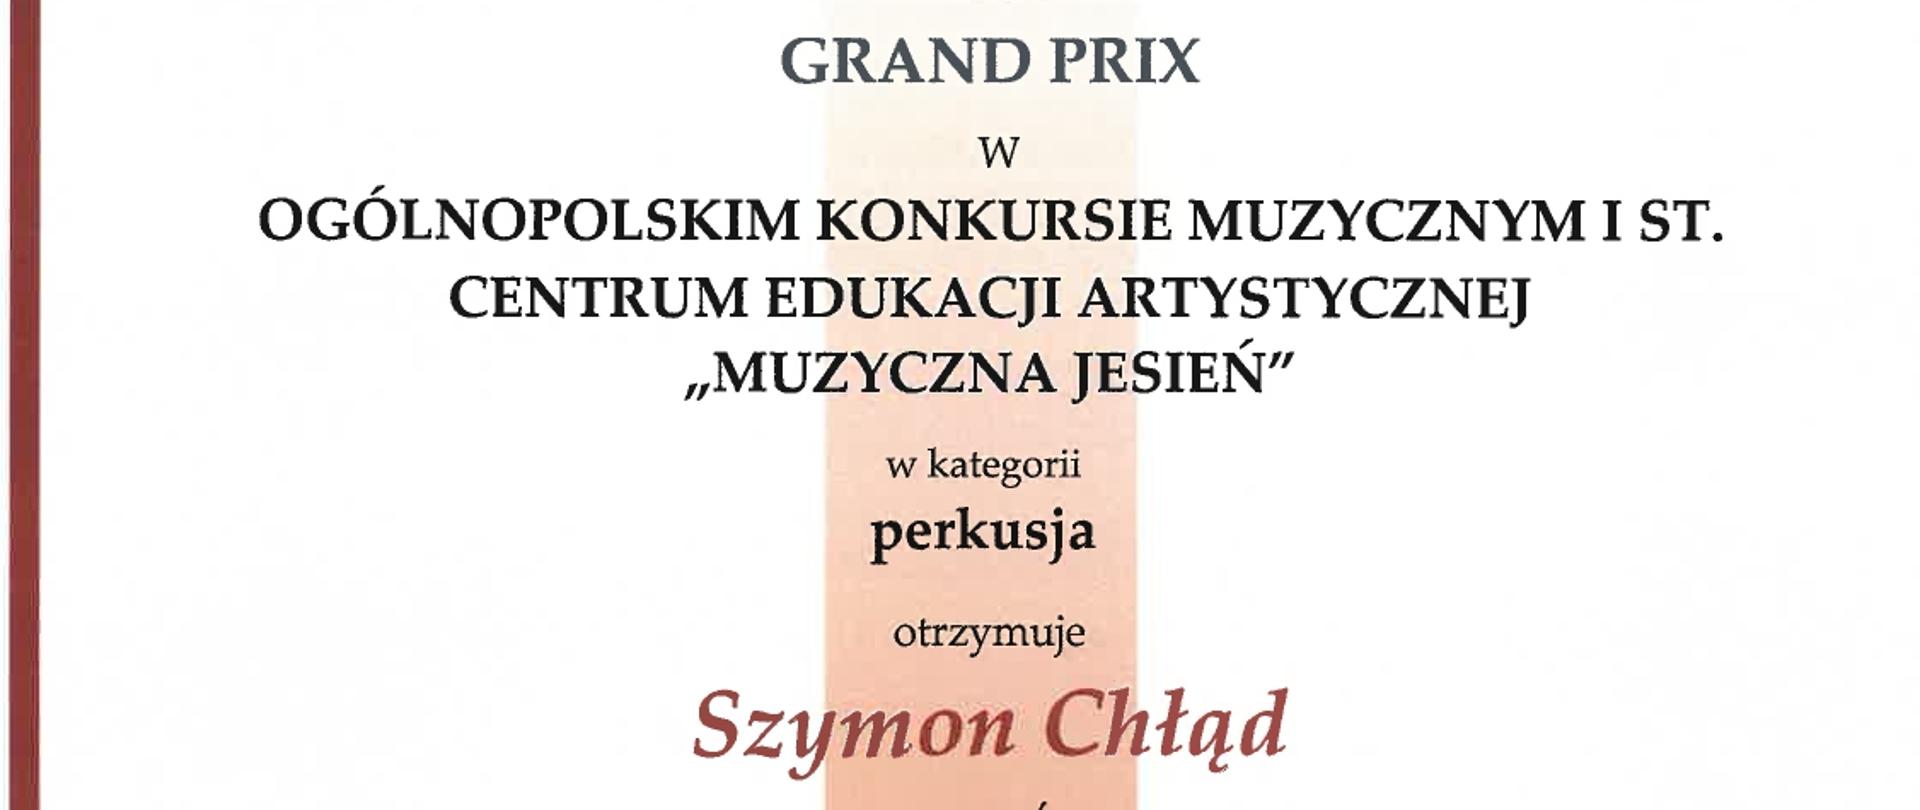 Dyplom laureata GRAND PRIX dla Szymona Chłąda w Ogólnopolskim Konkursie Muzycznym Centrum Edukacji Artystycznej I stopnia "Muzyczna Jesień"